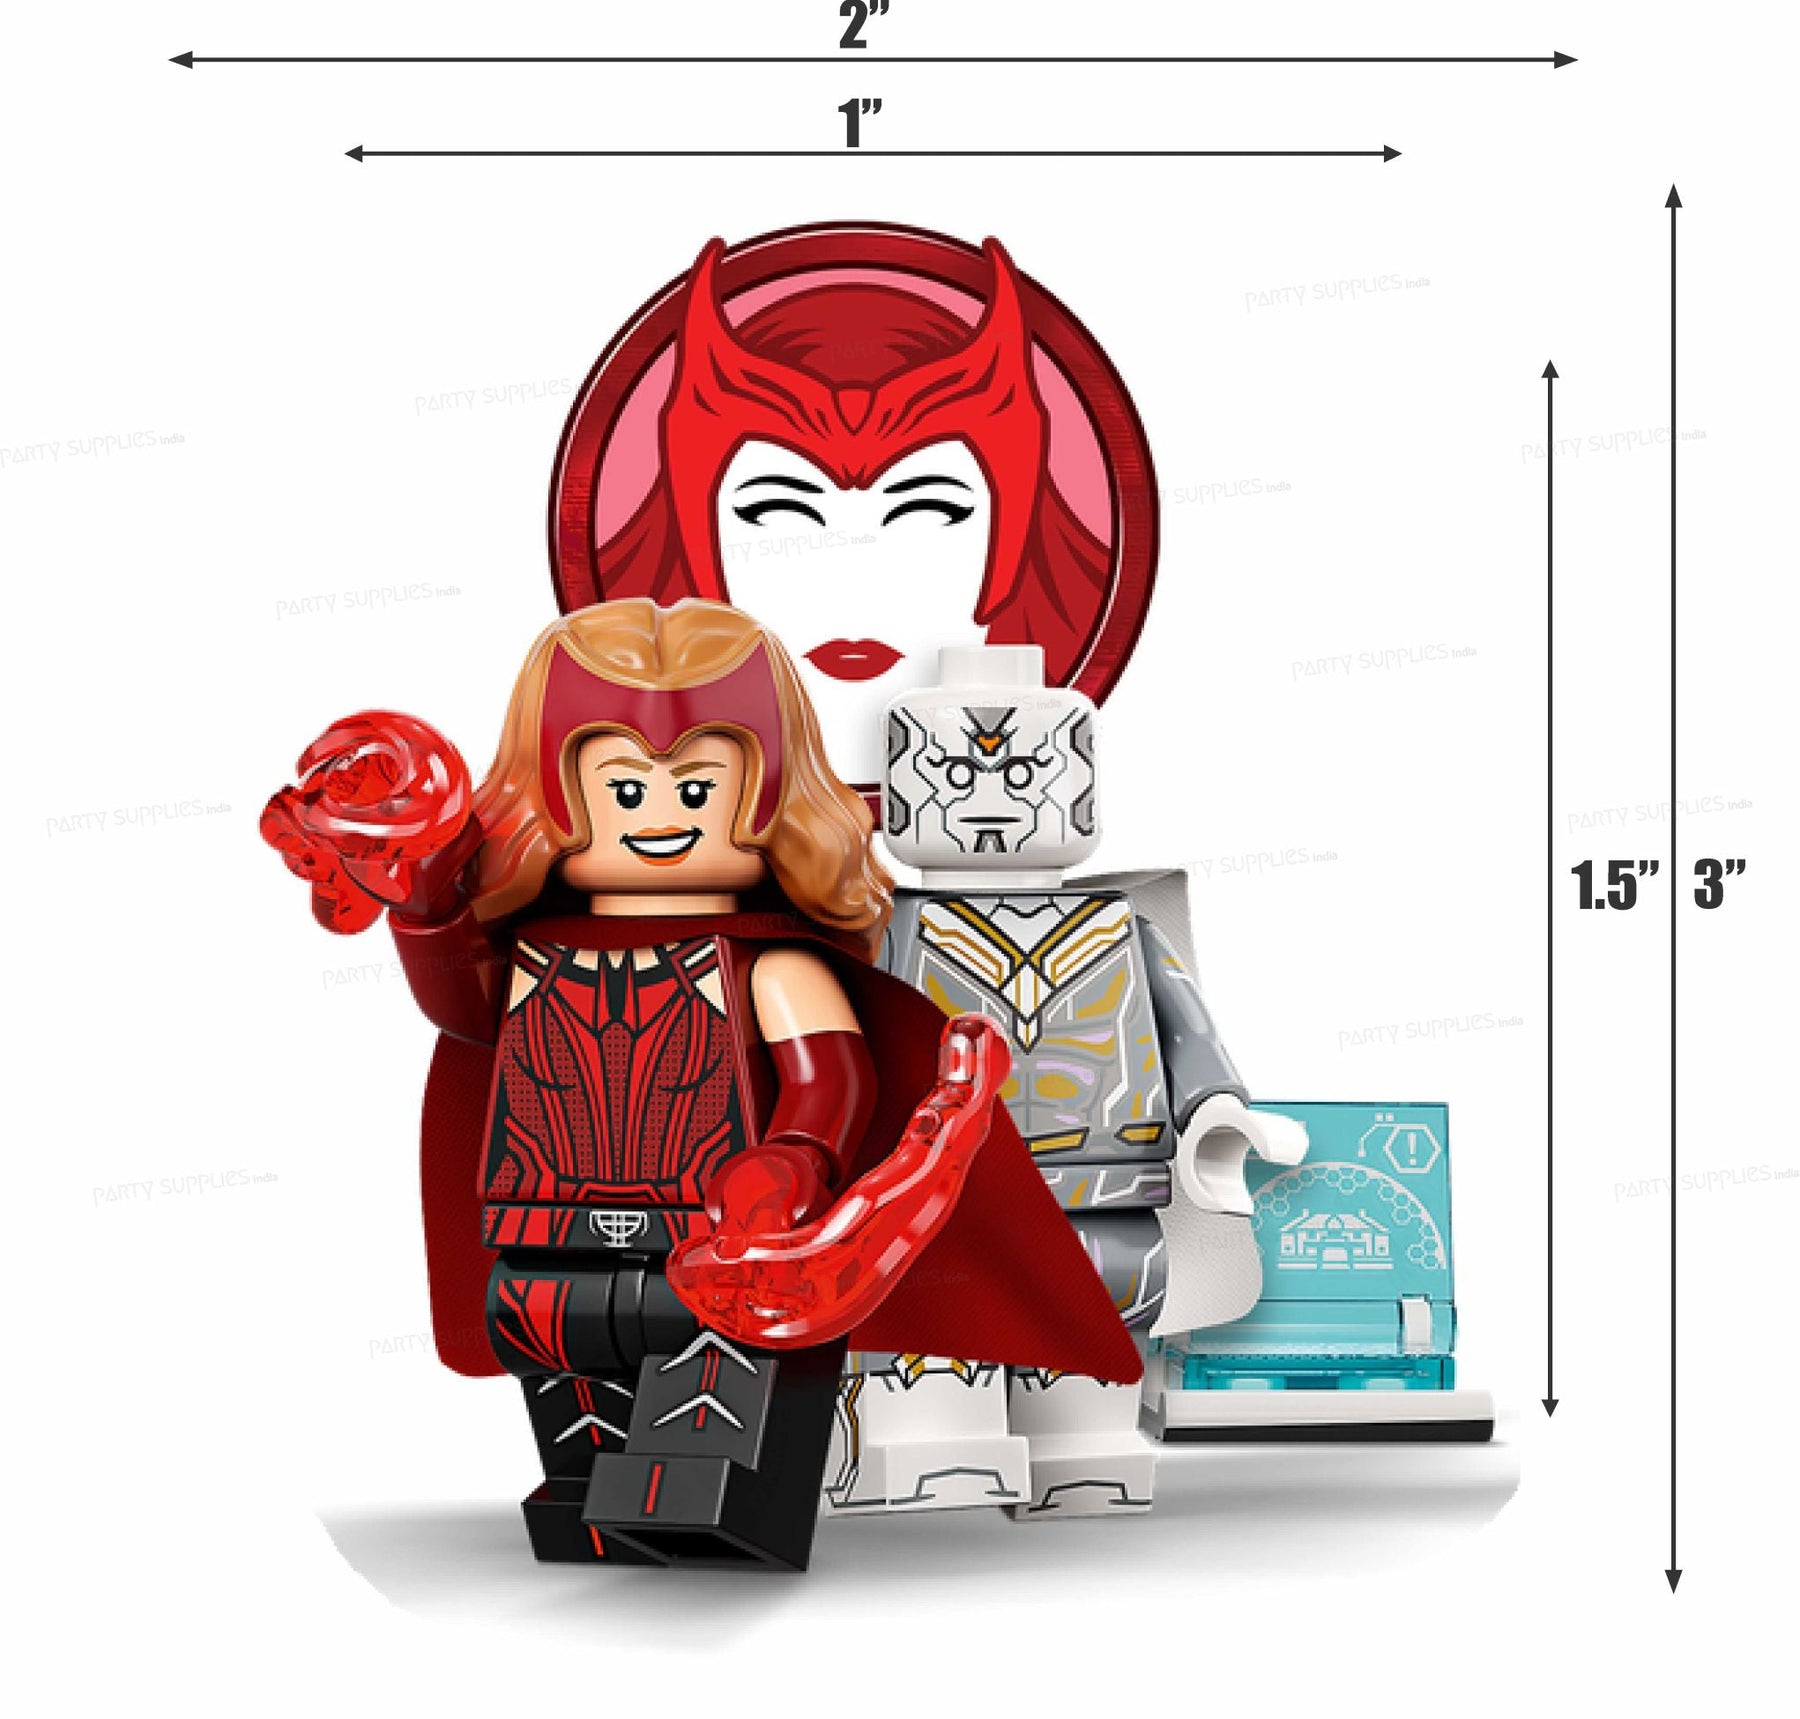 PSI Lego Theme Cutout - 02